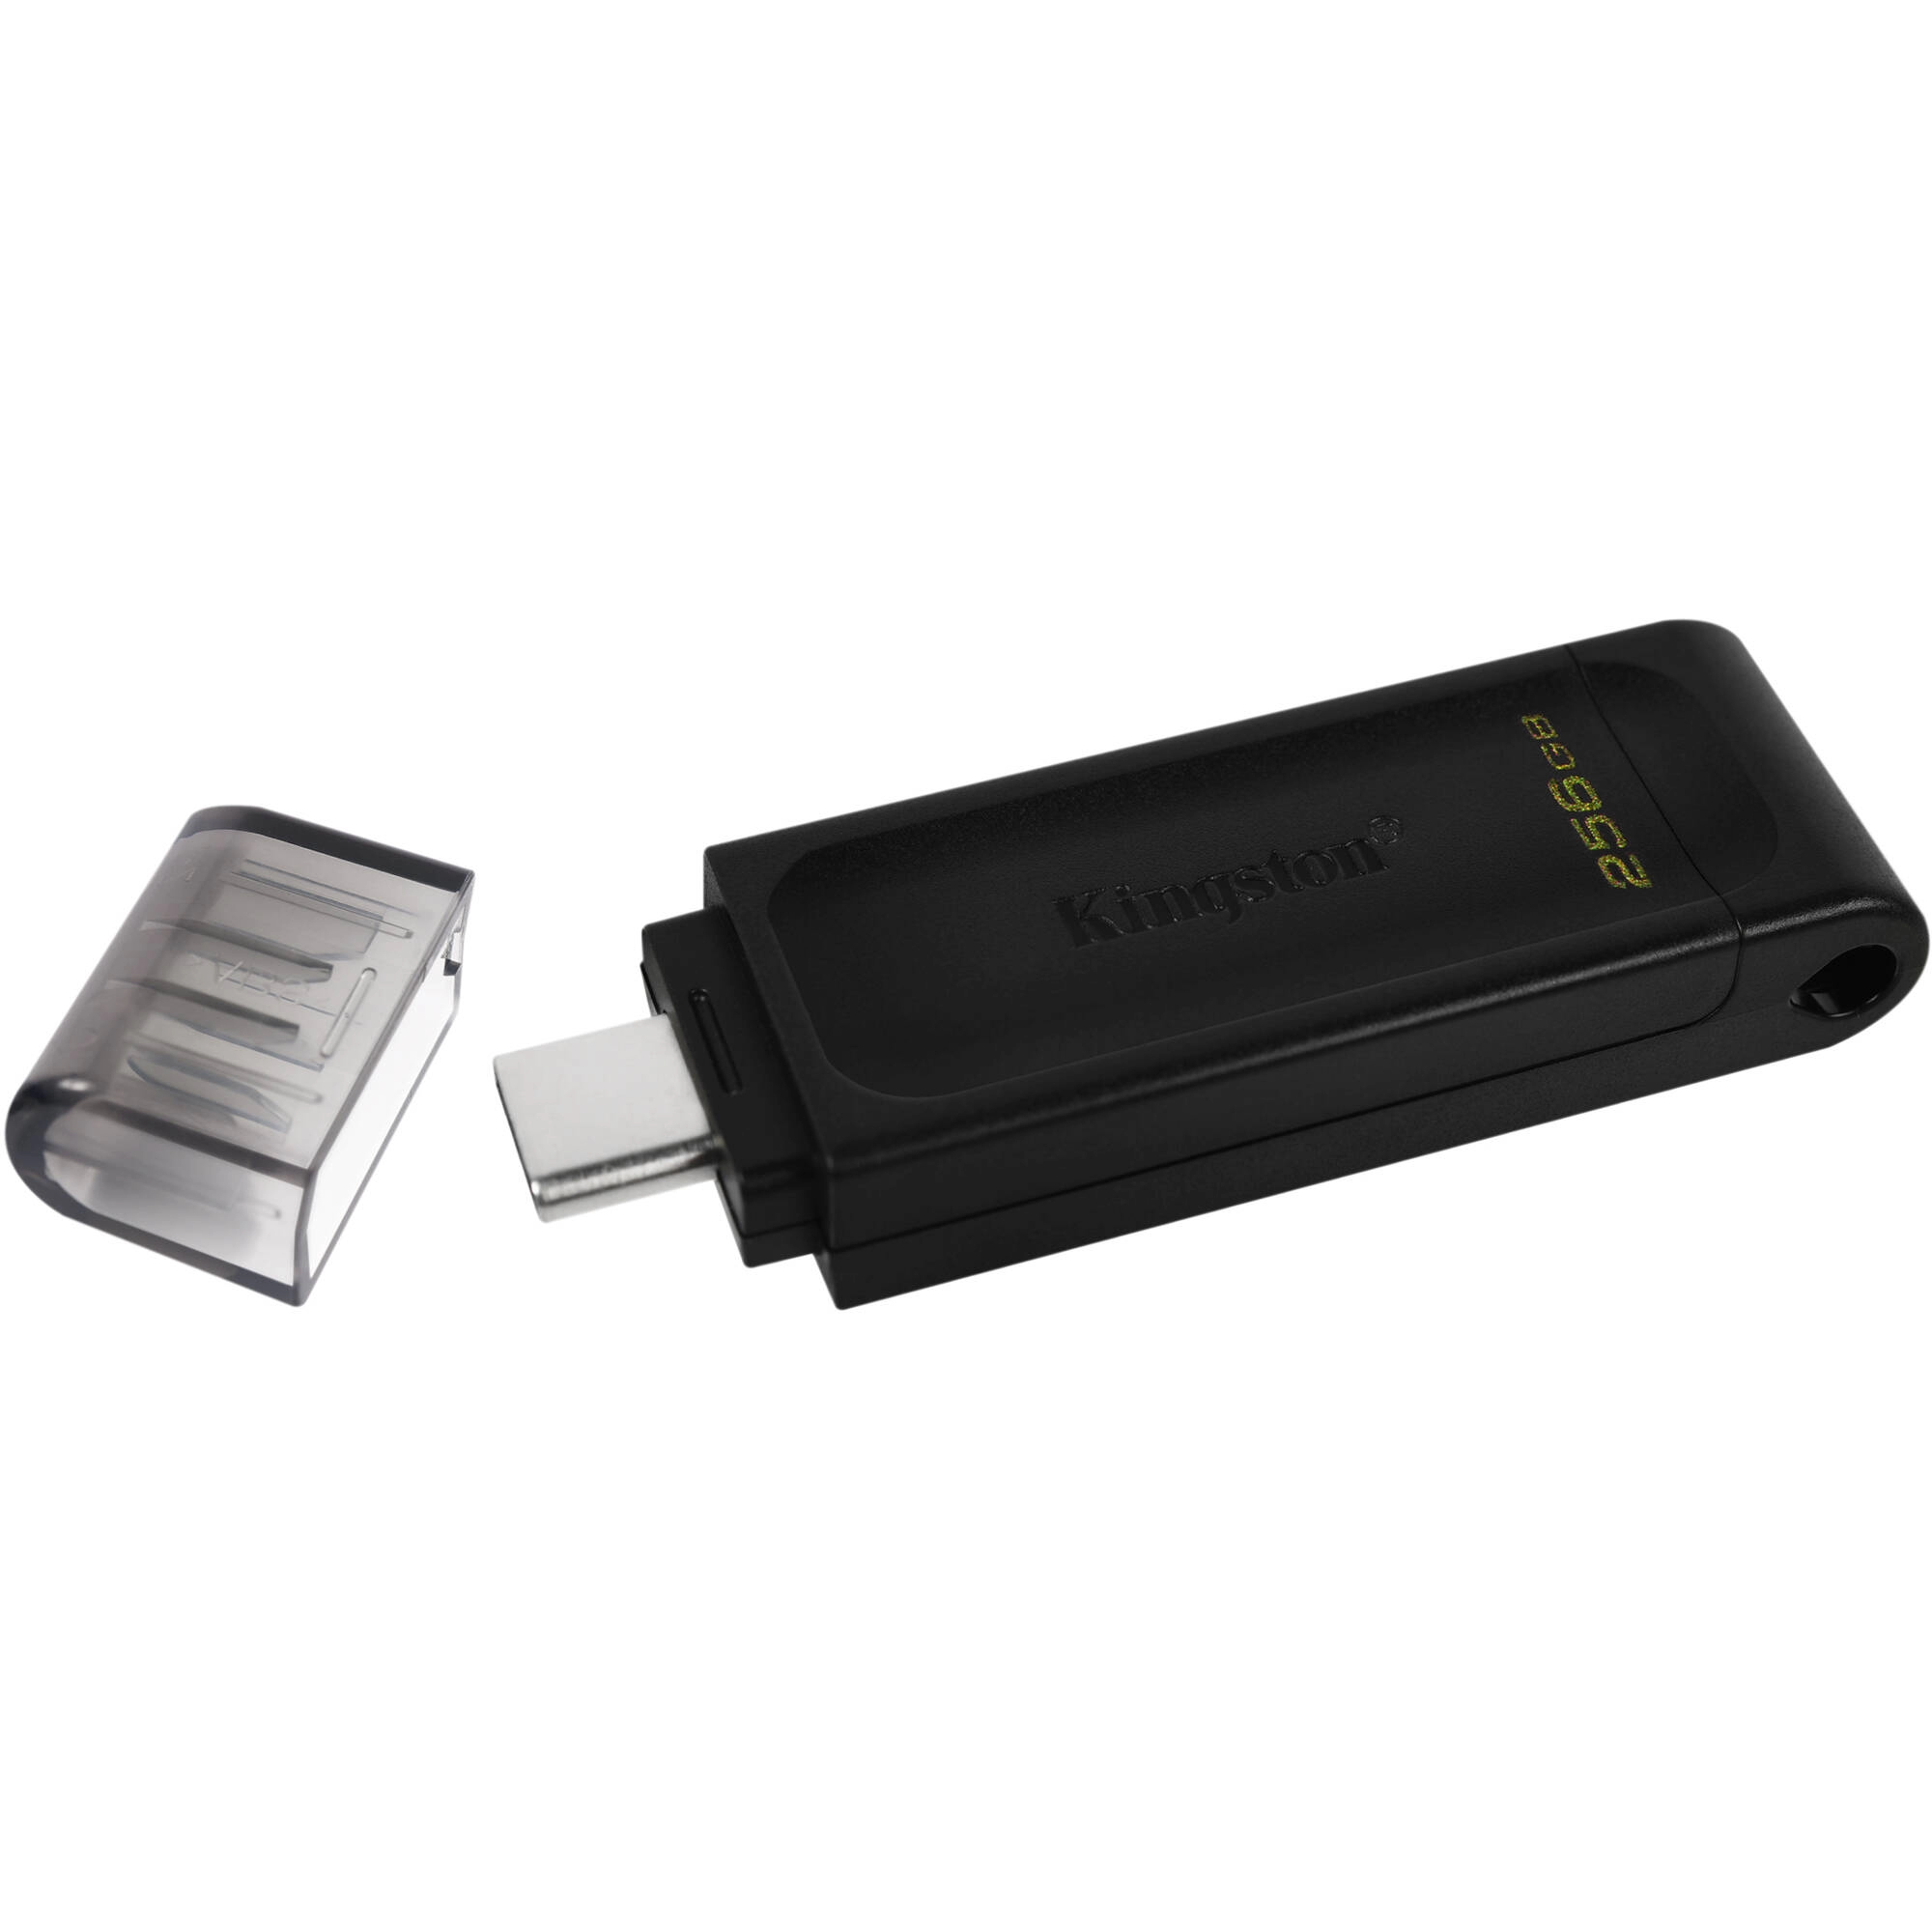 KINGSTON 256GB DataTraveler USB-C flash DT70/256GB